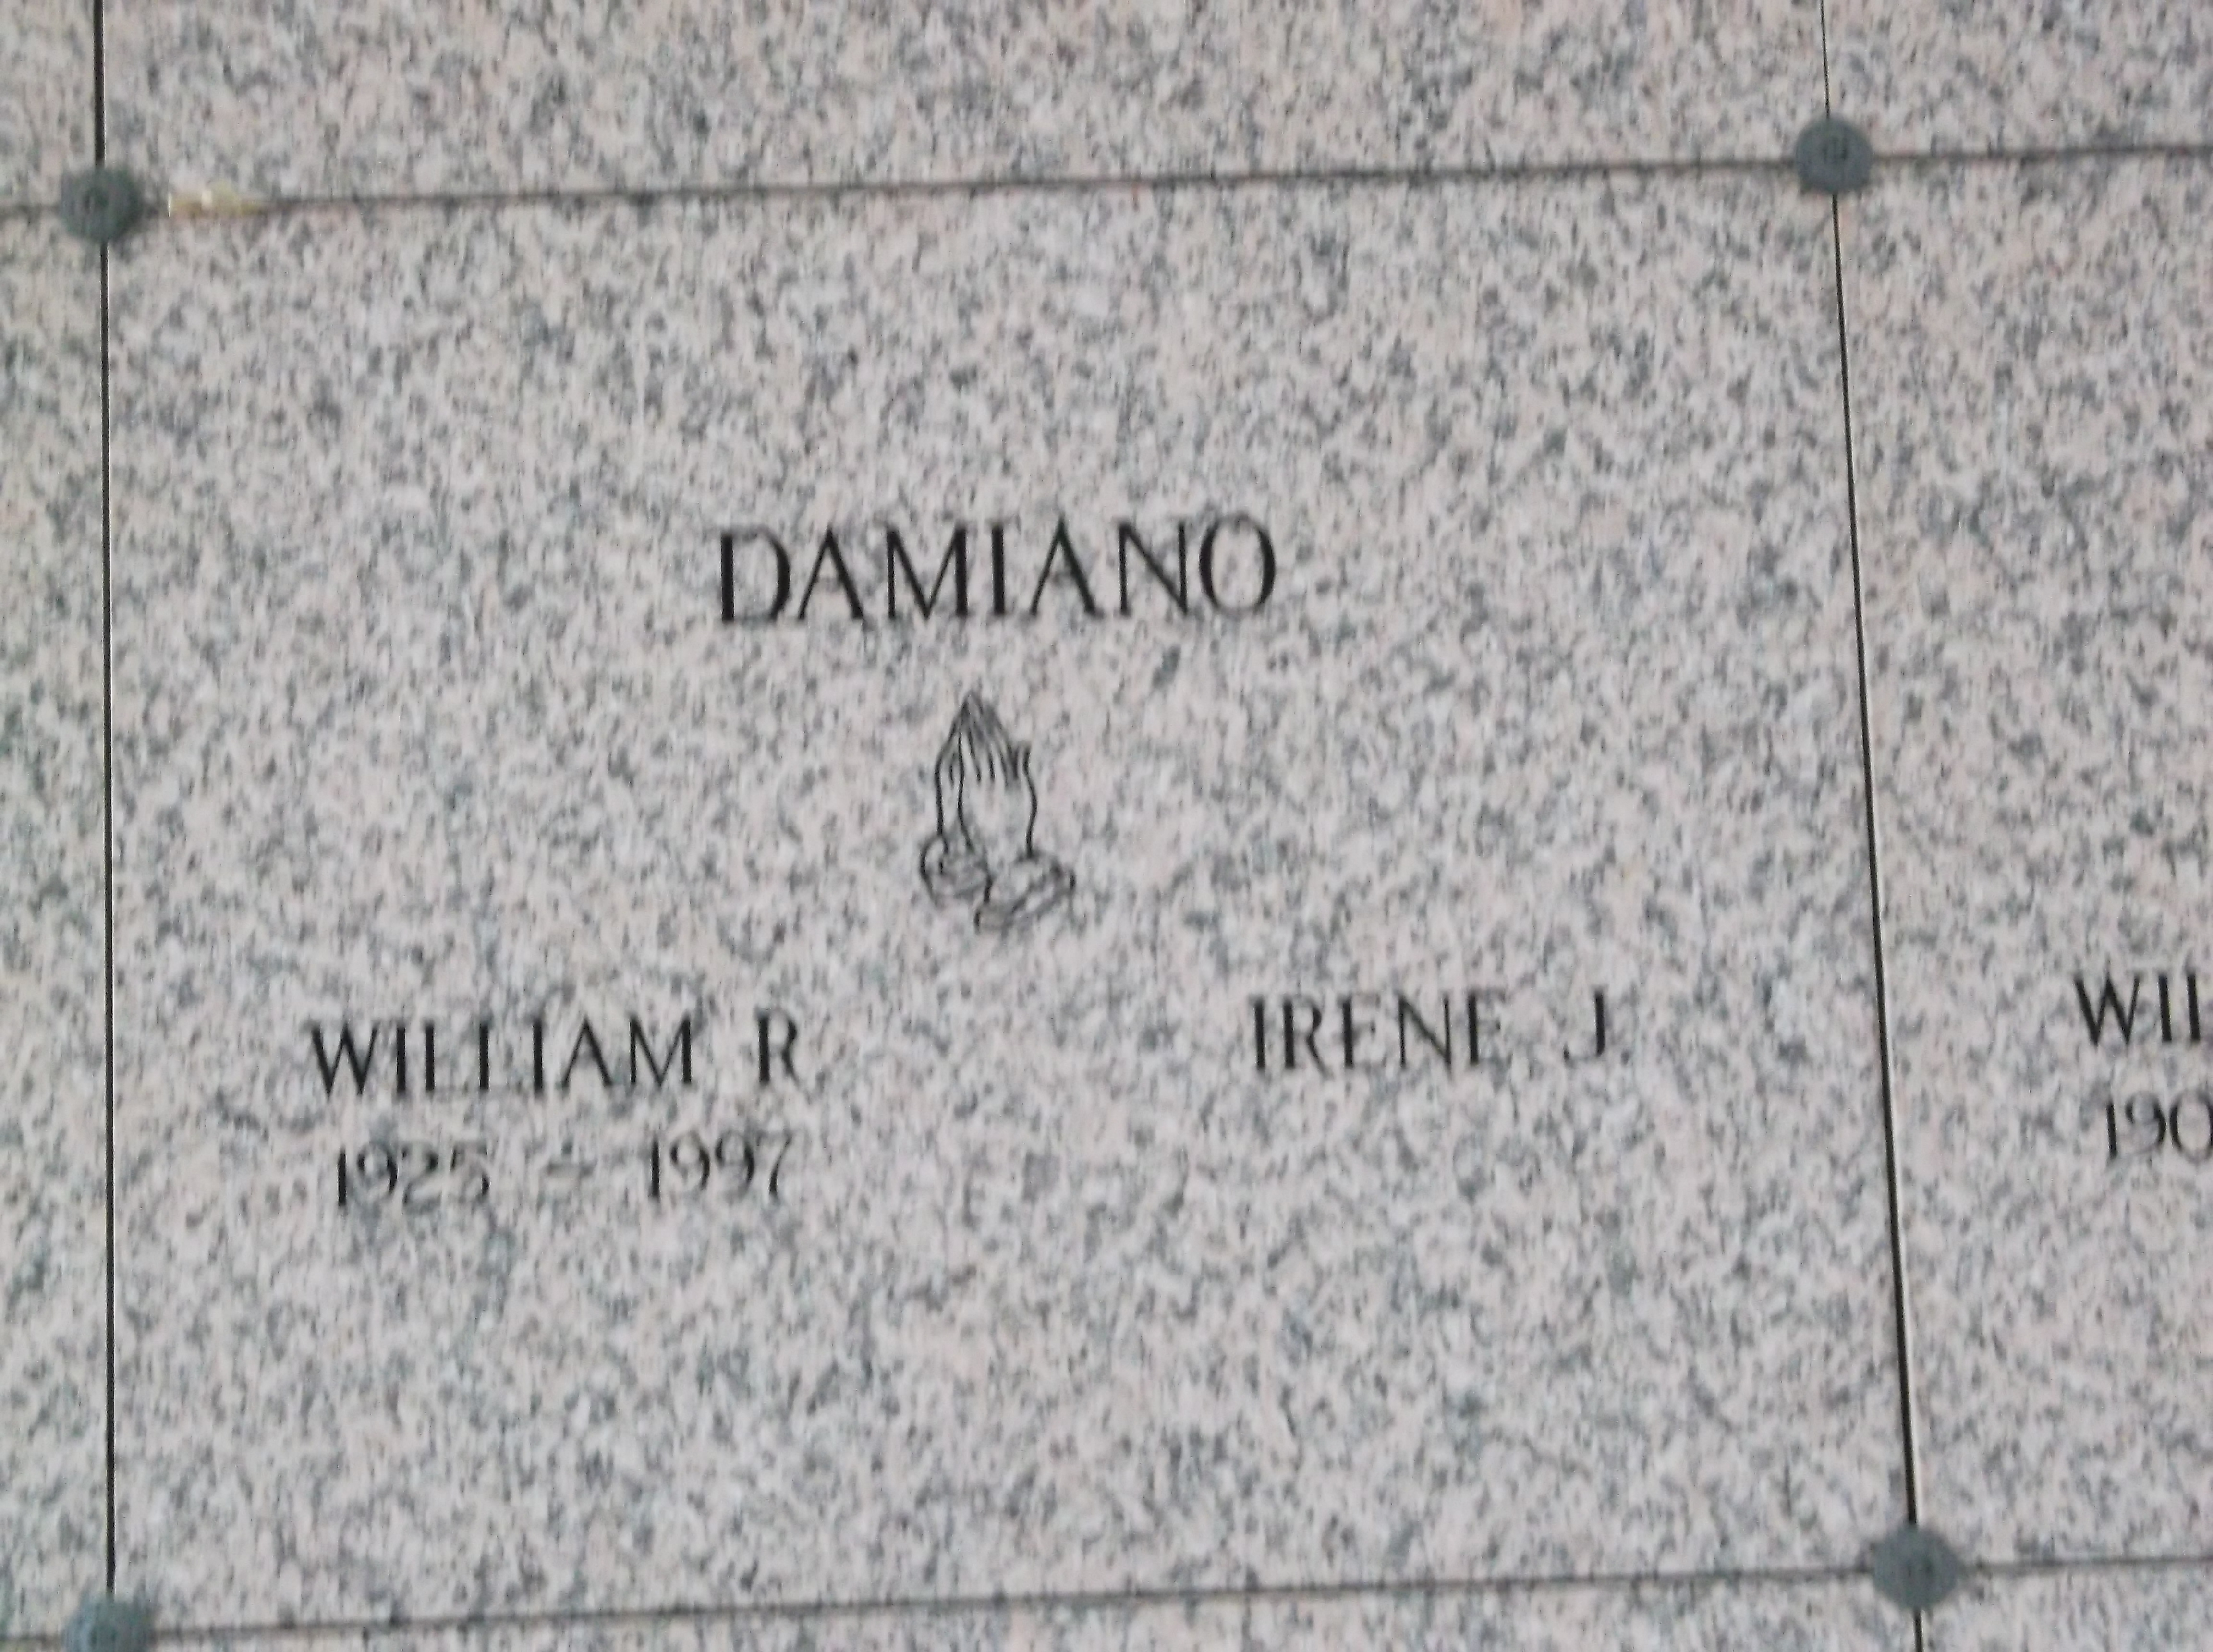 William R Damiano